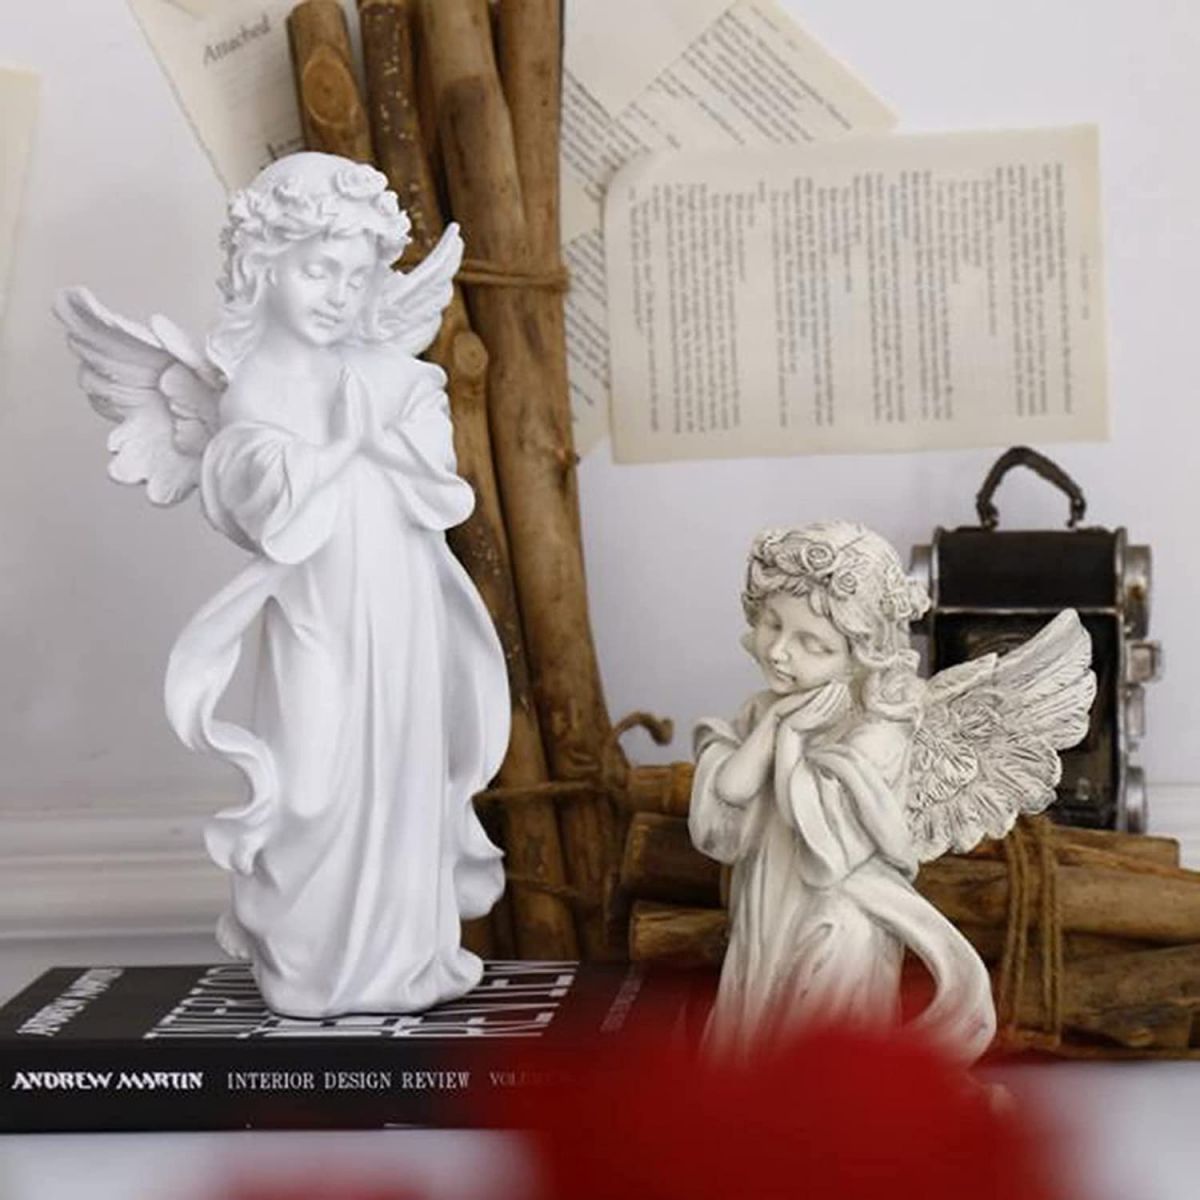 Figurki anioła sprawdzą się w każdym rodzaju wnętrza